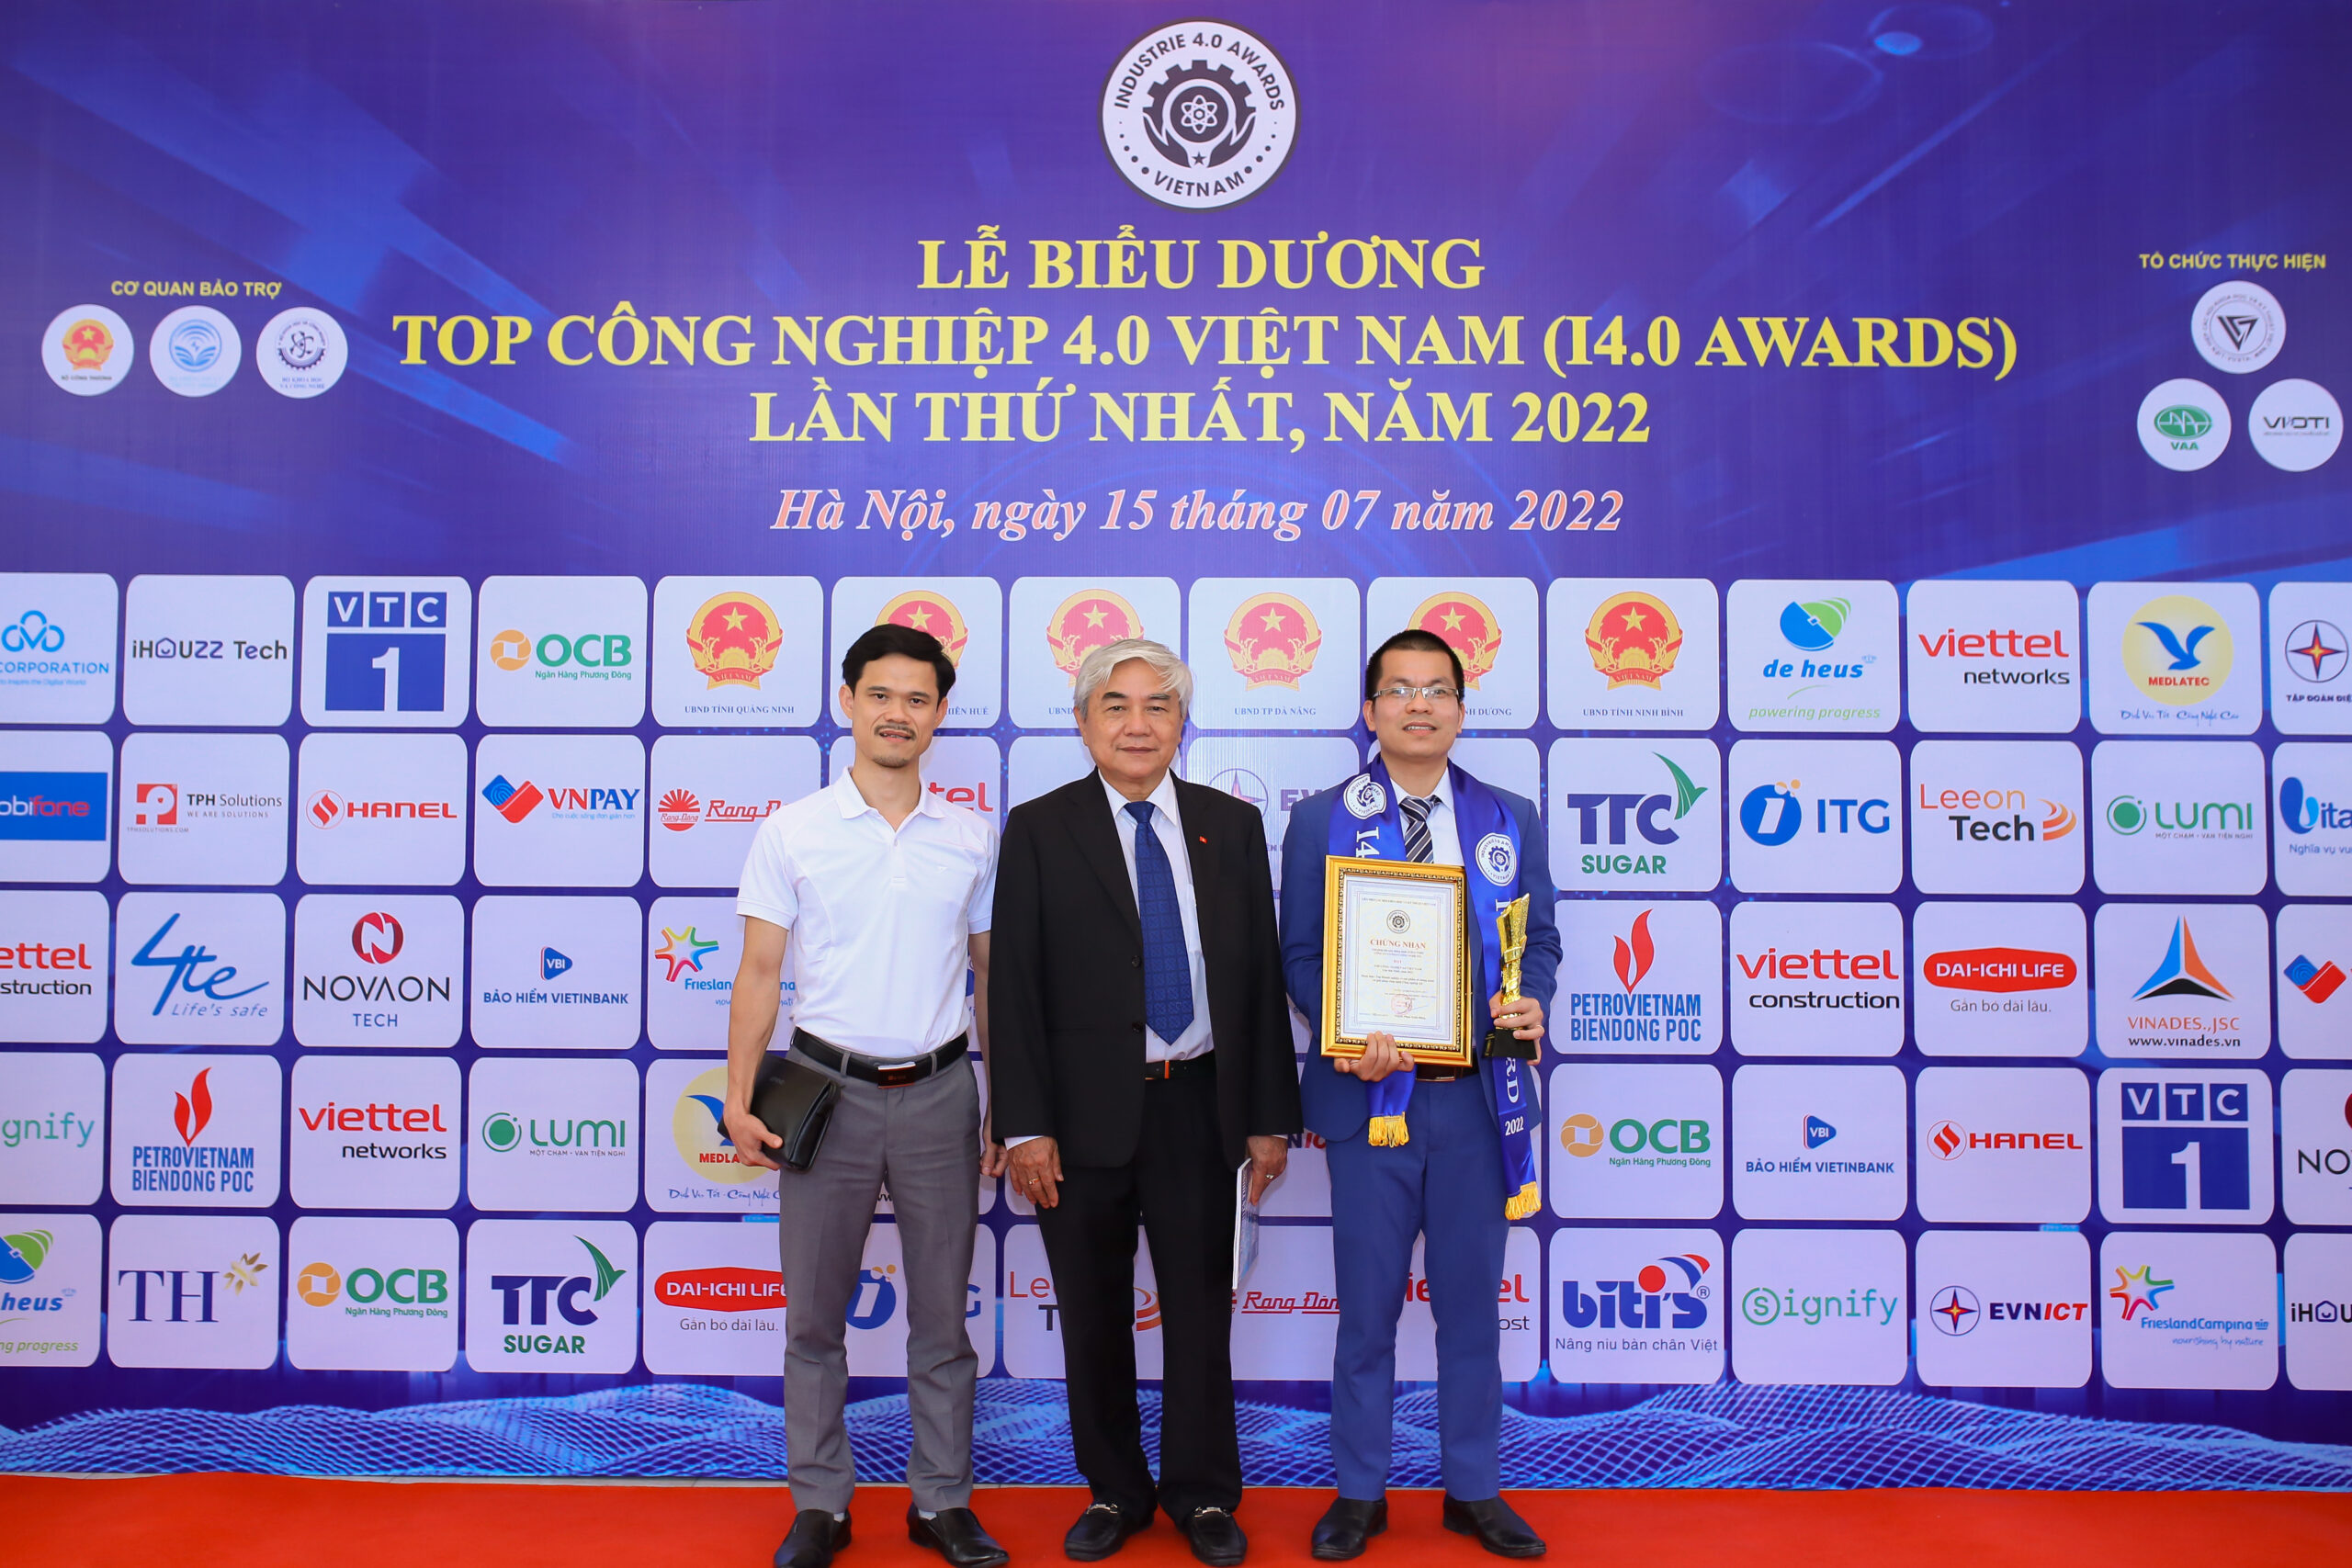 Đại diện ITG Technology chụp ảnh lưu niệm với TS. Nguyễn Quân - Nguyên bộ trưởng Bộ KH&CN